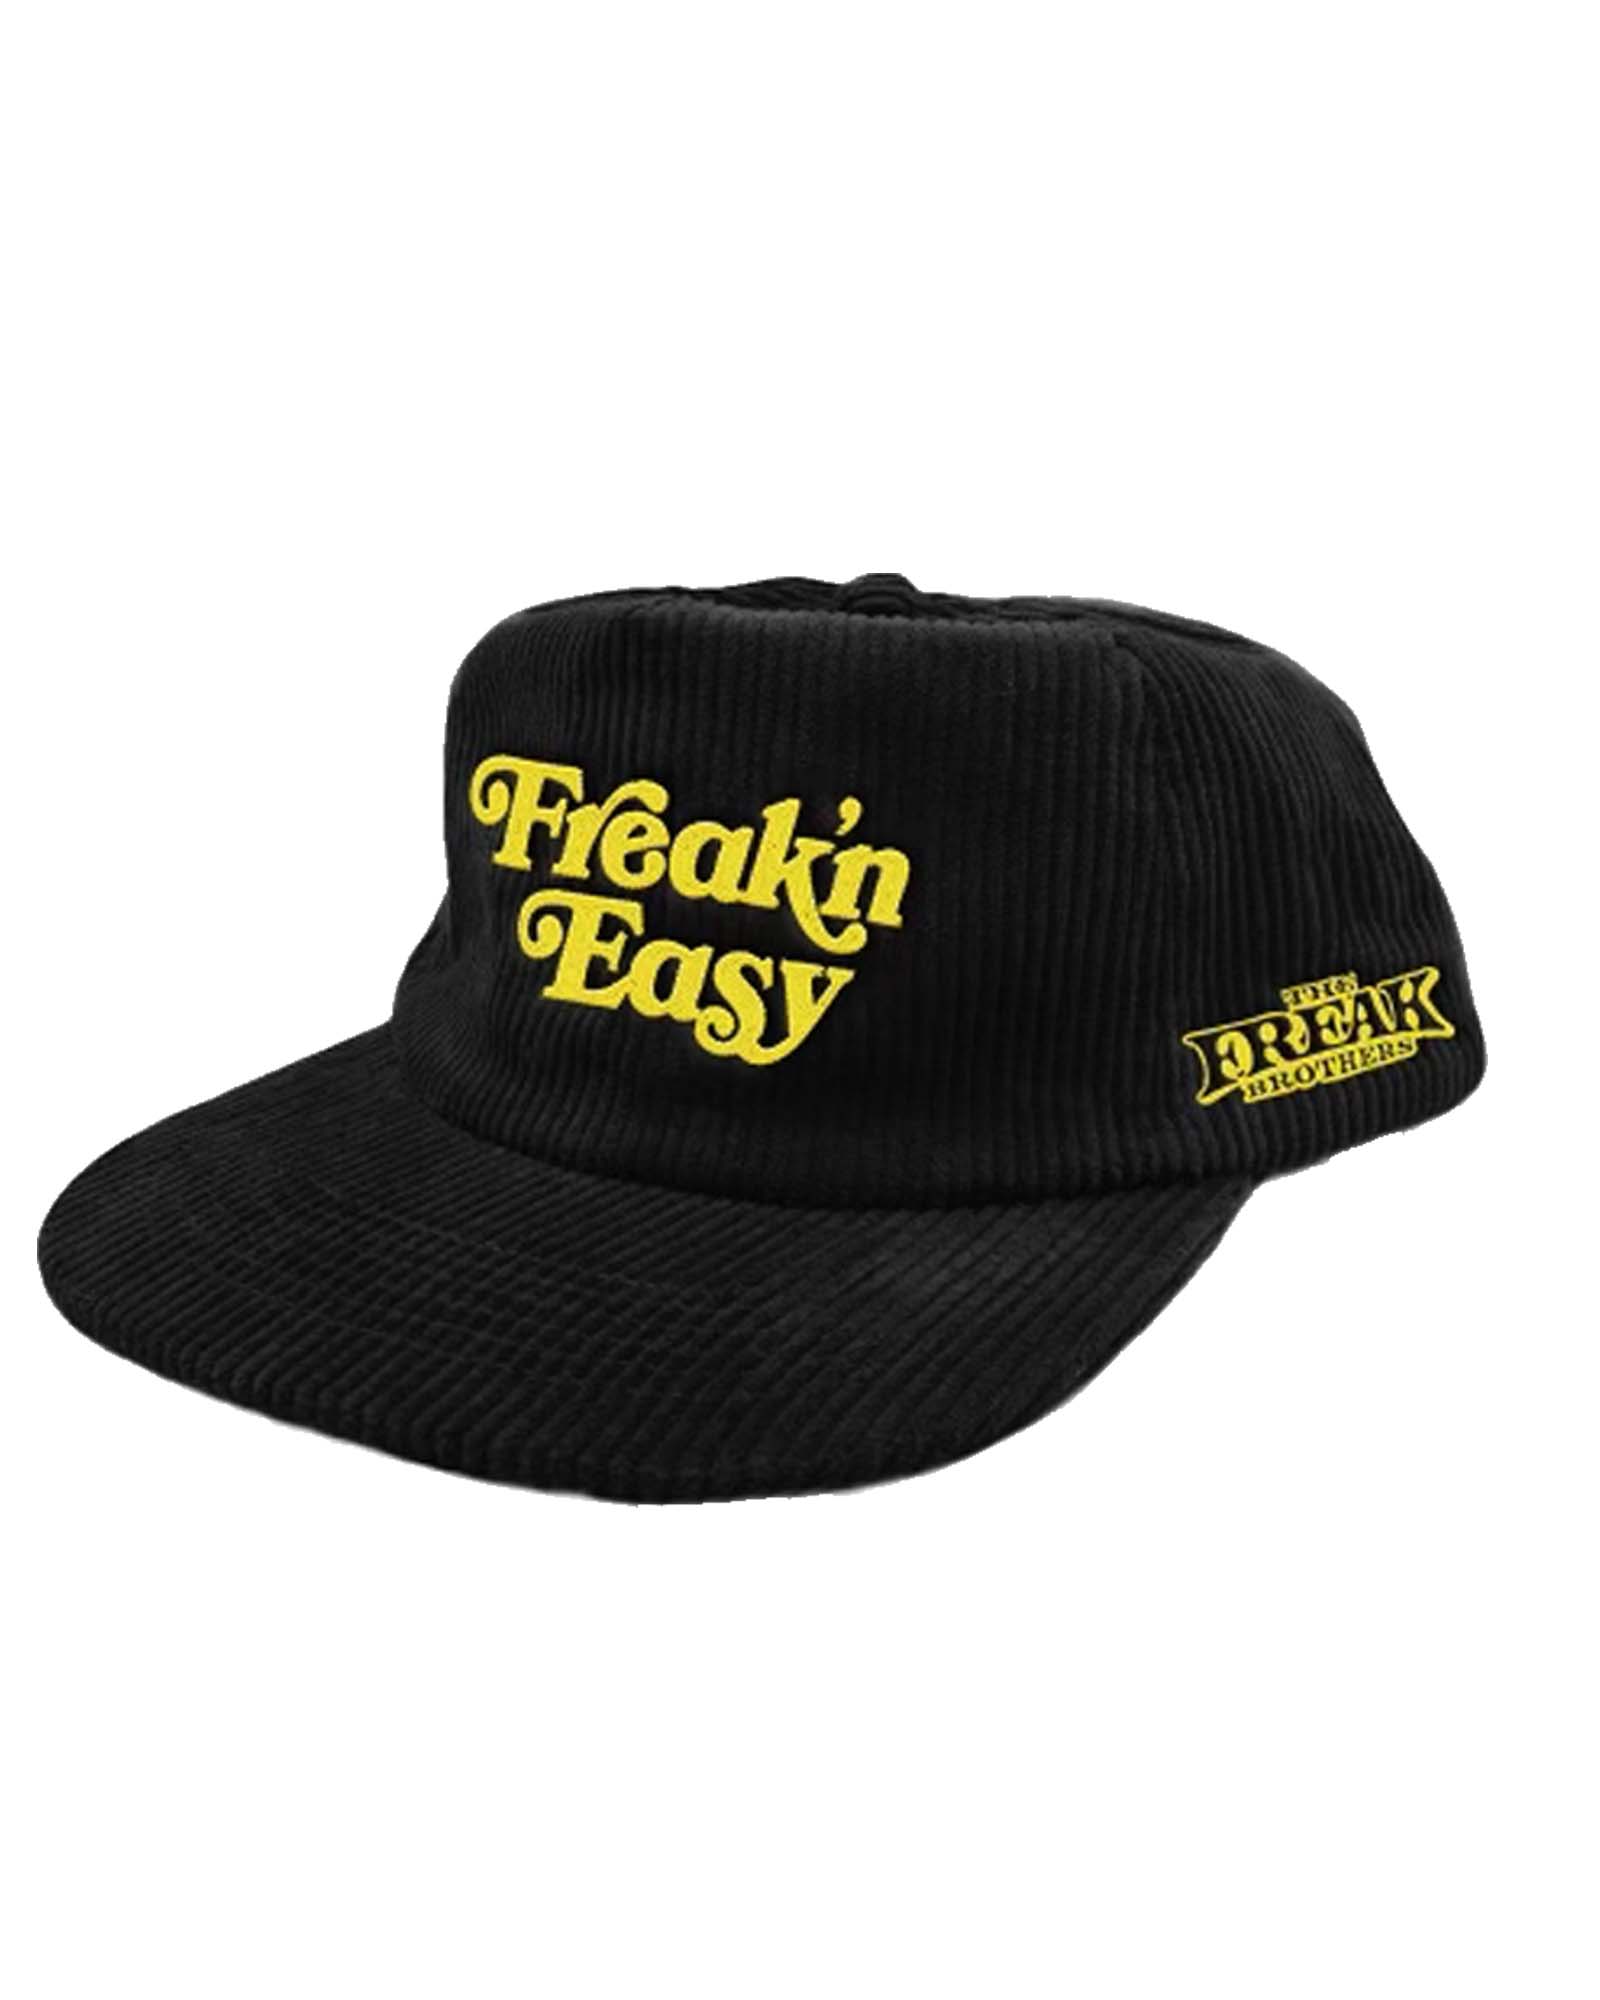 Freak'n Easy Snapback Hat – The Freak Brothers